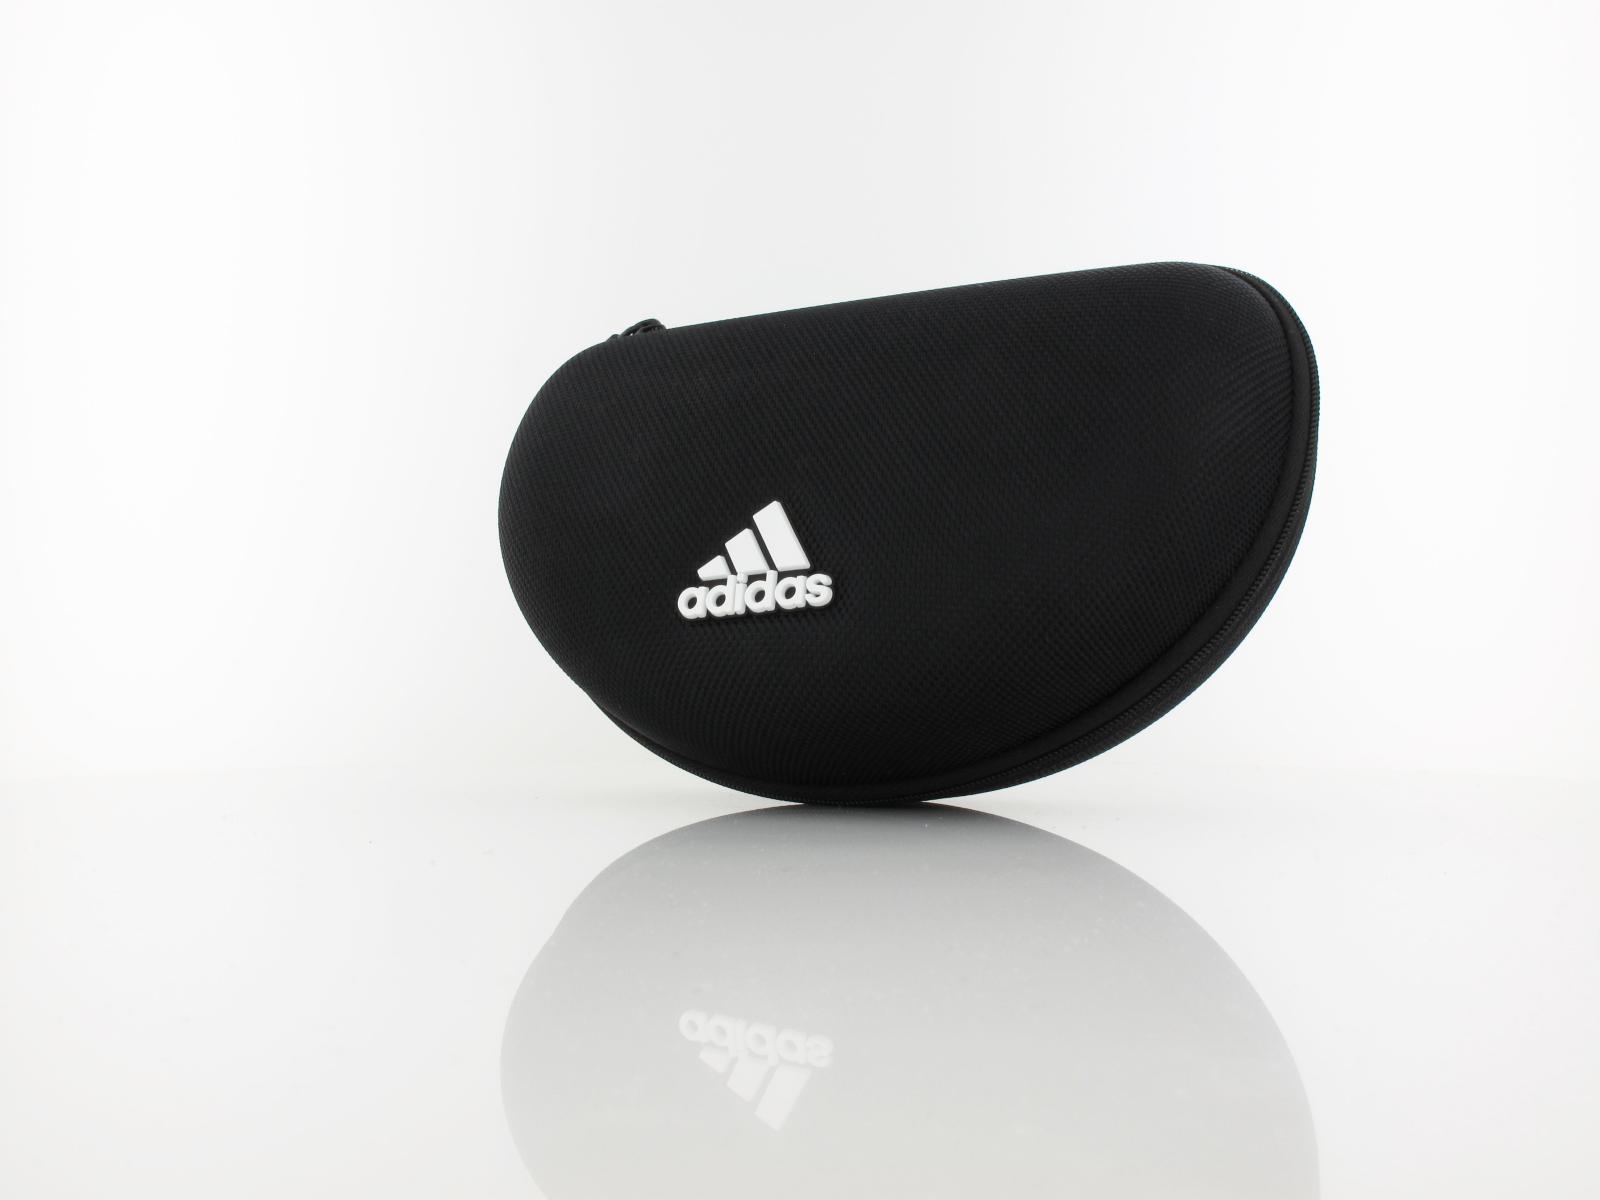 Adidas | SP0064 02A 130 | matte black / smoke